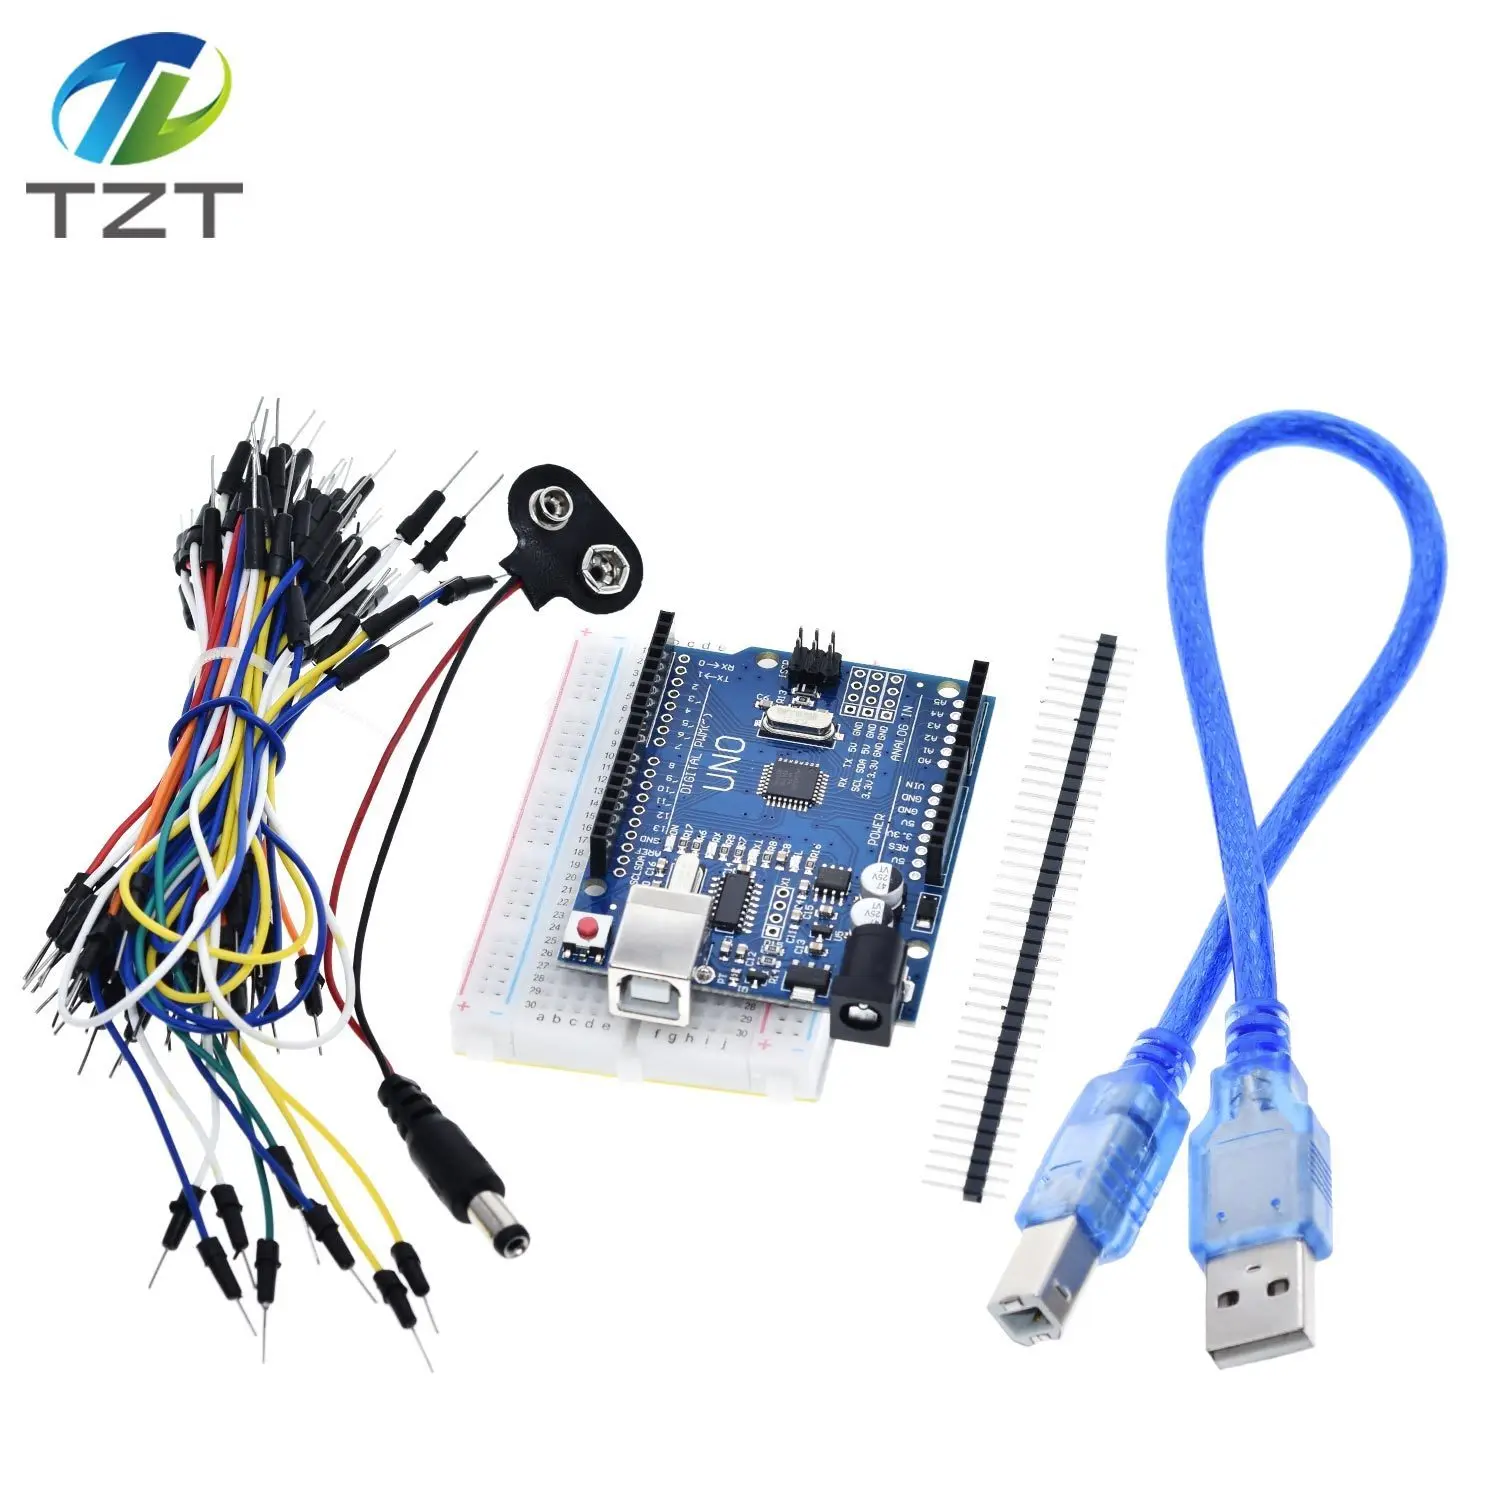 TZT стартовый комплект для arduino Uno R3-комплект из 5 предметов: Uno R3, макетная плата, перемычки, usb-кабель и разъем для аккумулятора 9 в